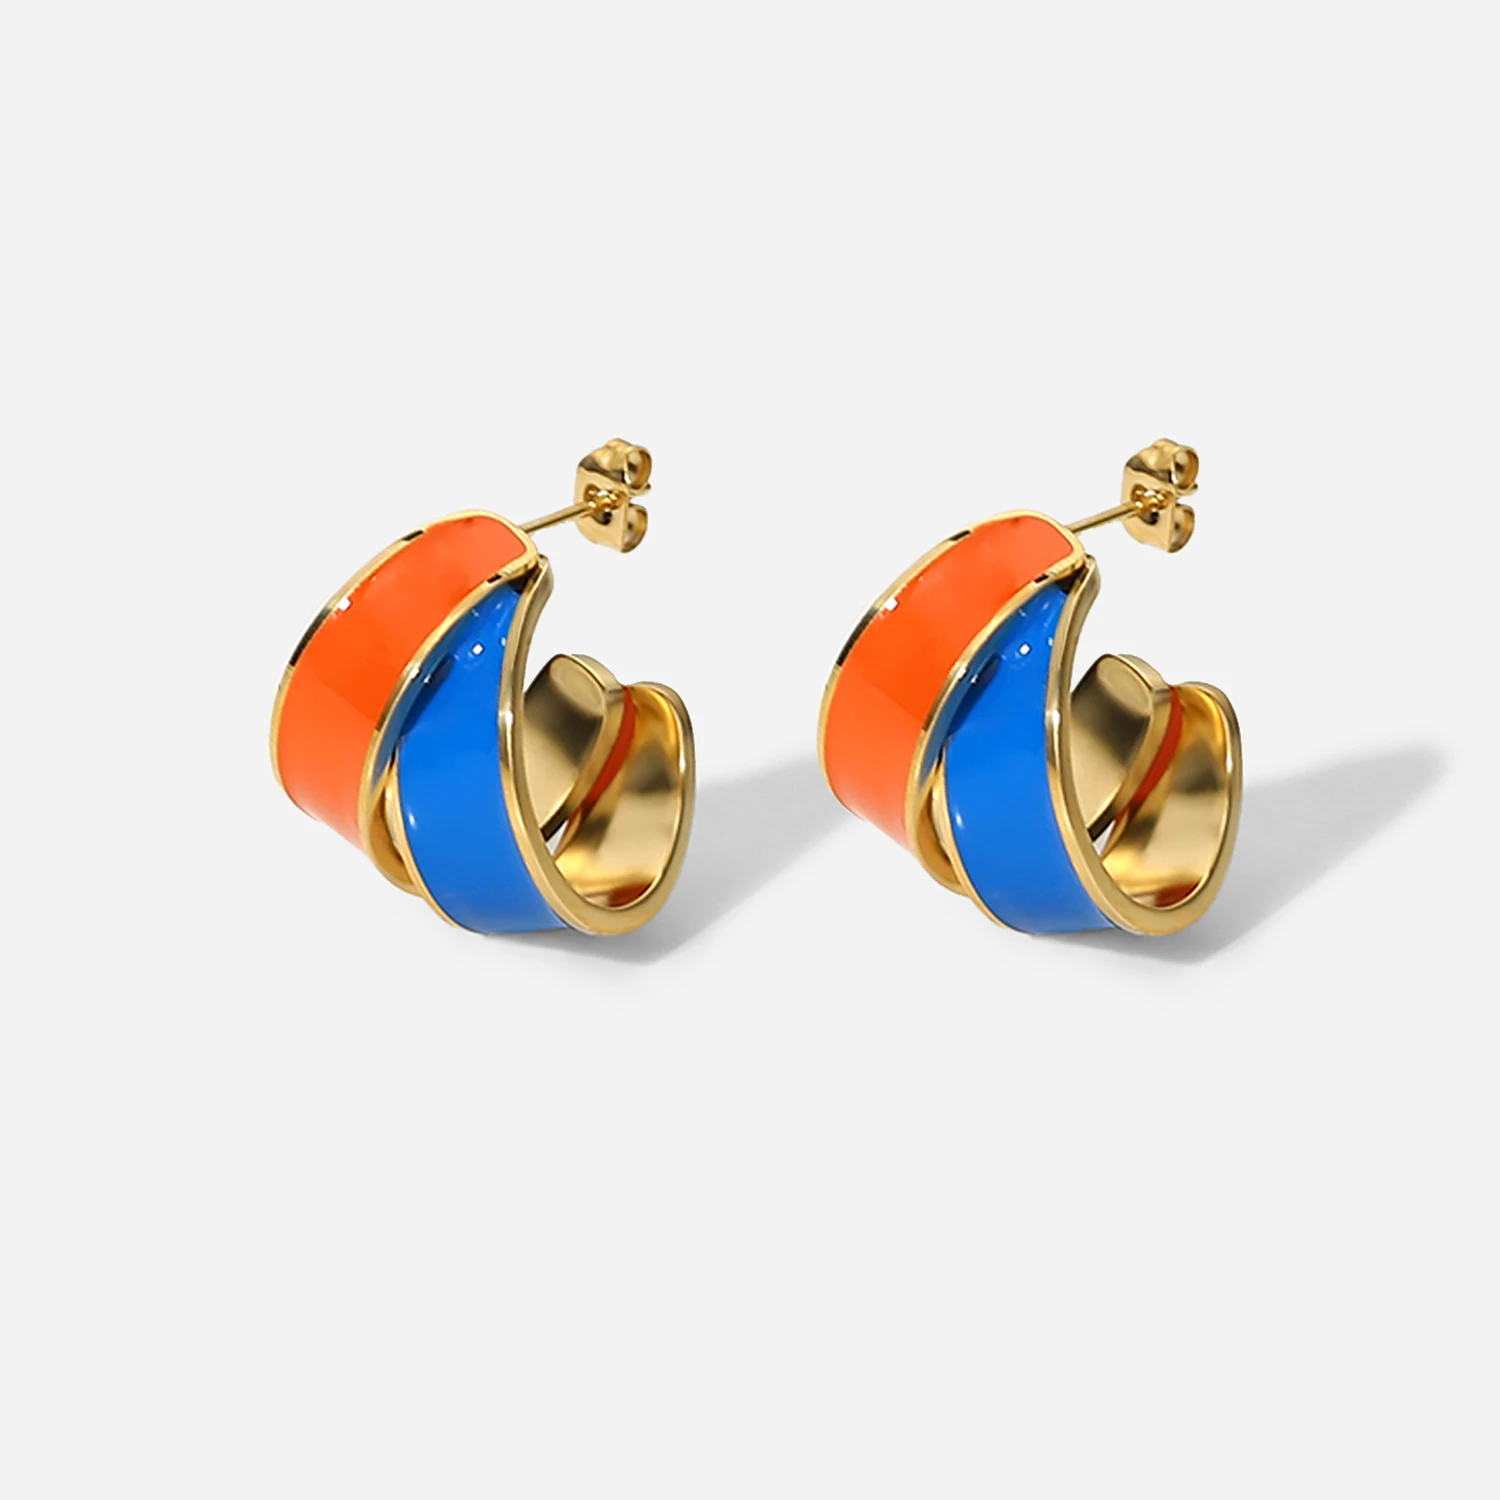 

Geometric Colorful Matching Oil Drop Stud Earrings 14K Waterproof Stainless Steel Staggered Enamel Hoop Earrings